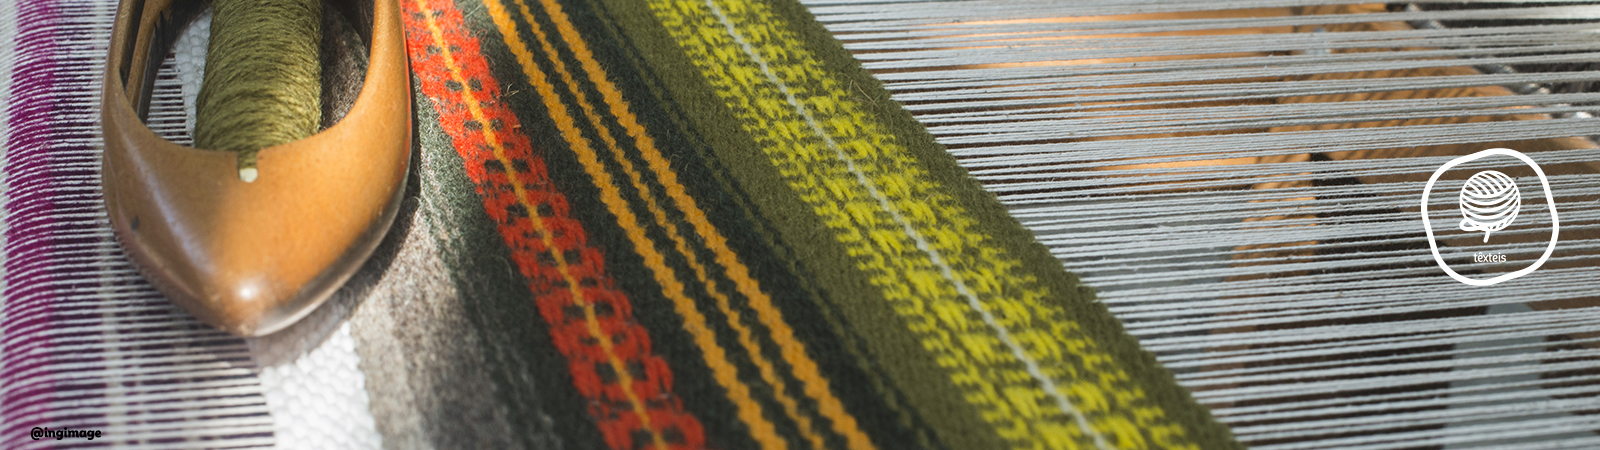  Tecelagem e tapeçaria contemporânea